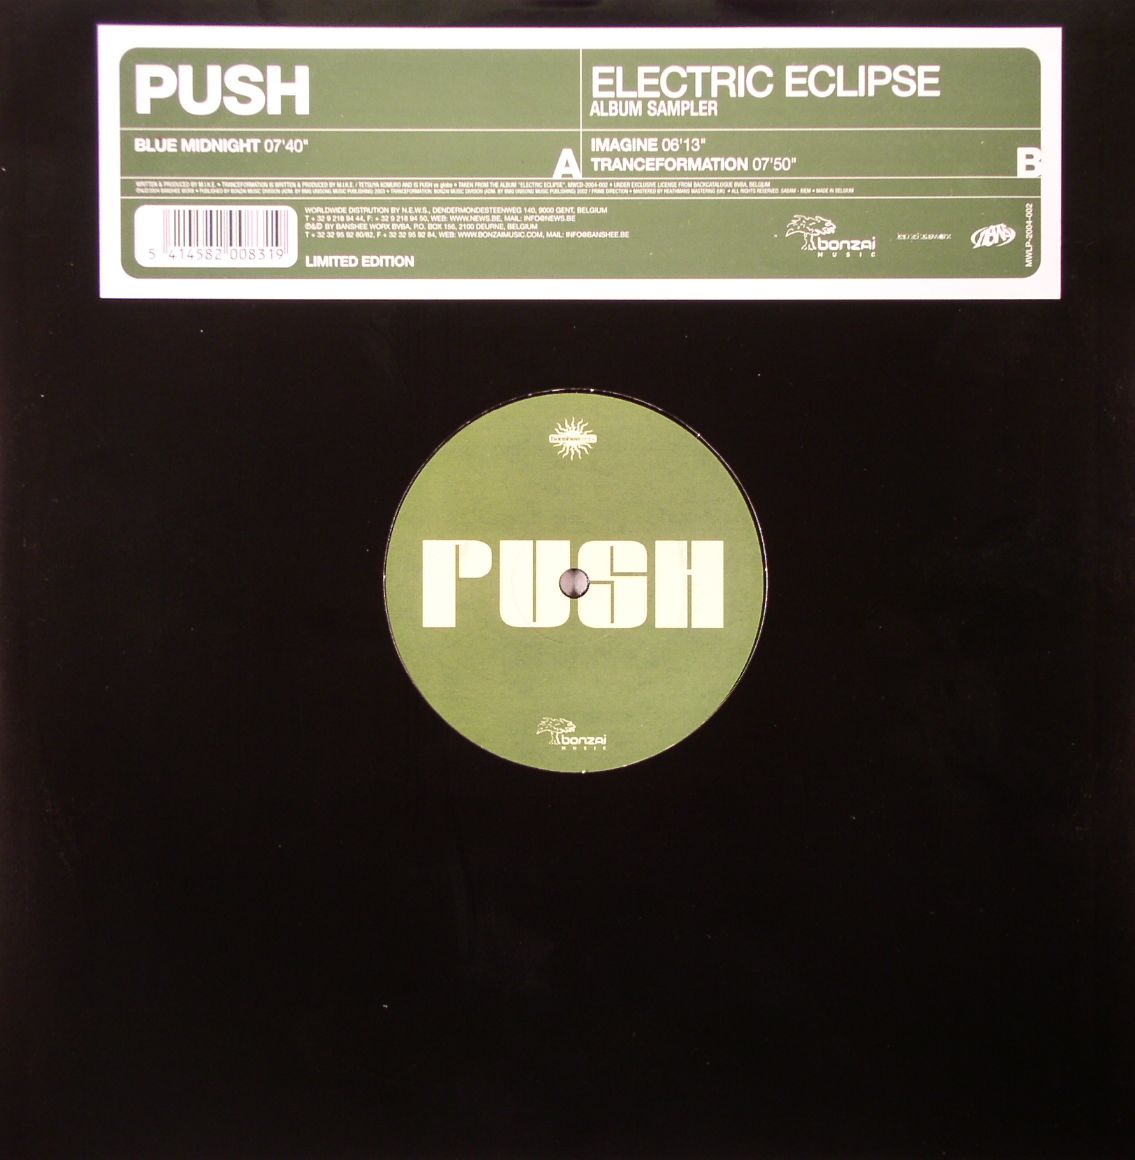 PUSH - Electric Eclipse (Album Sampler)